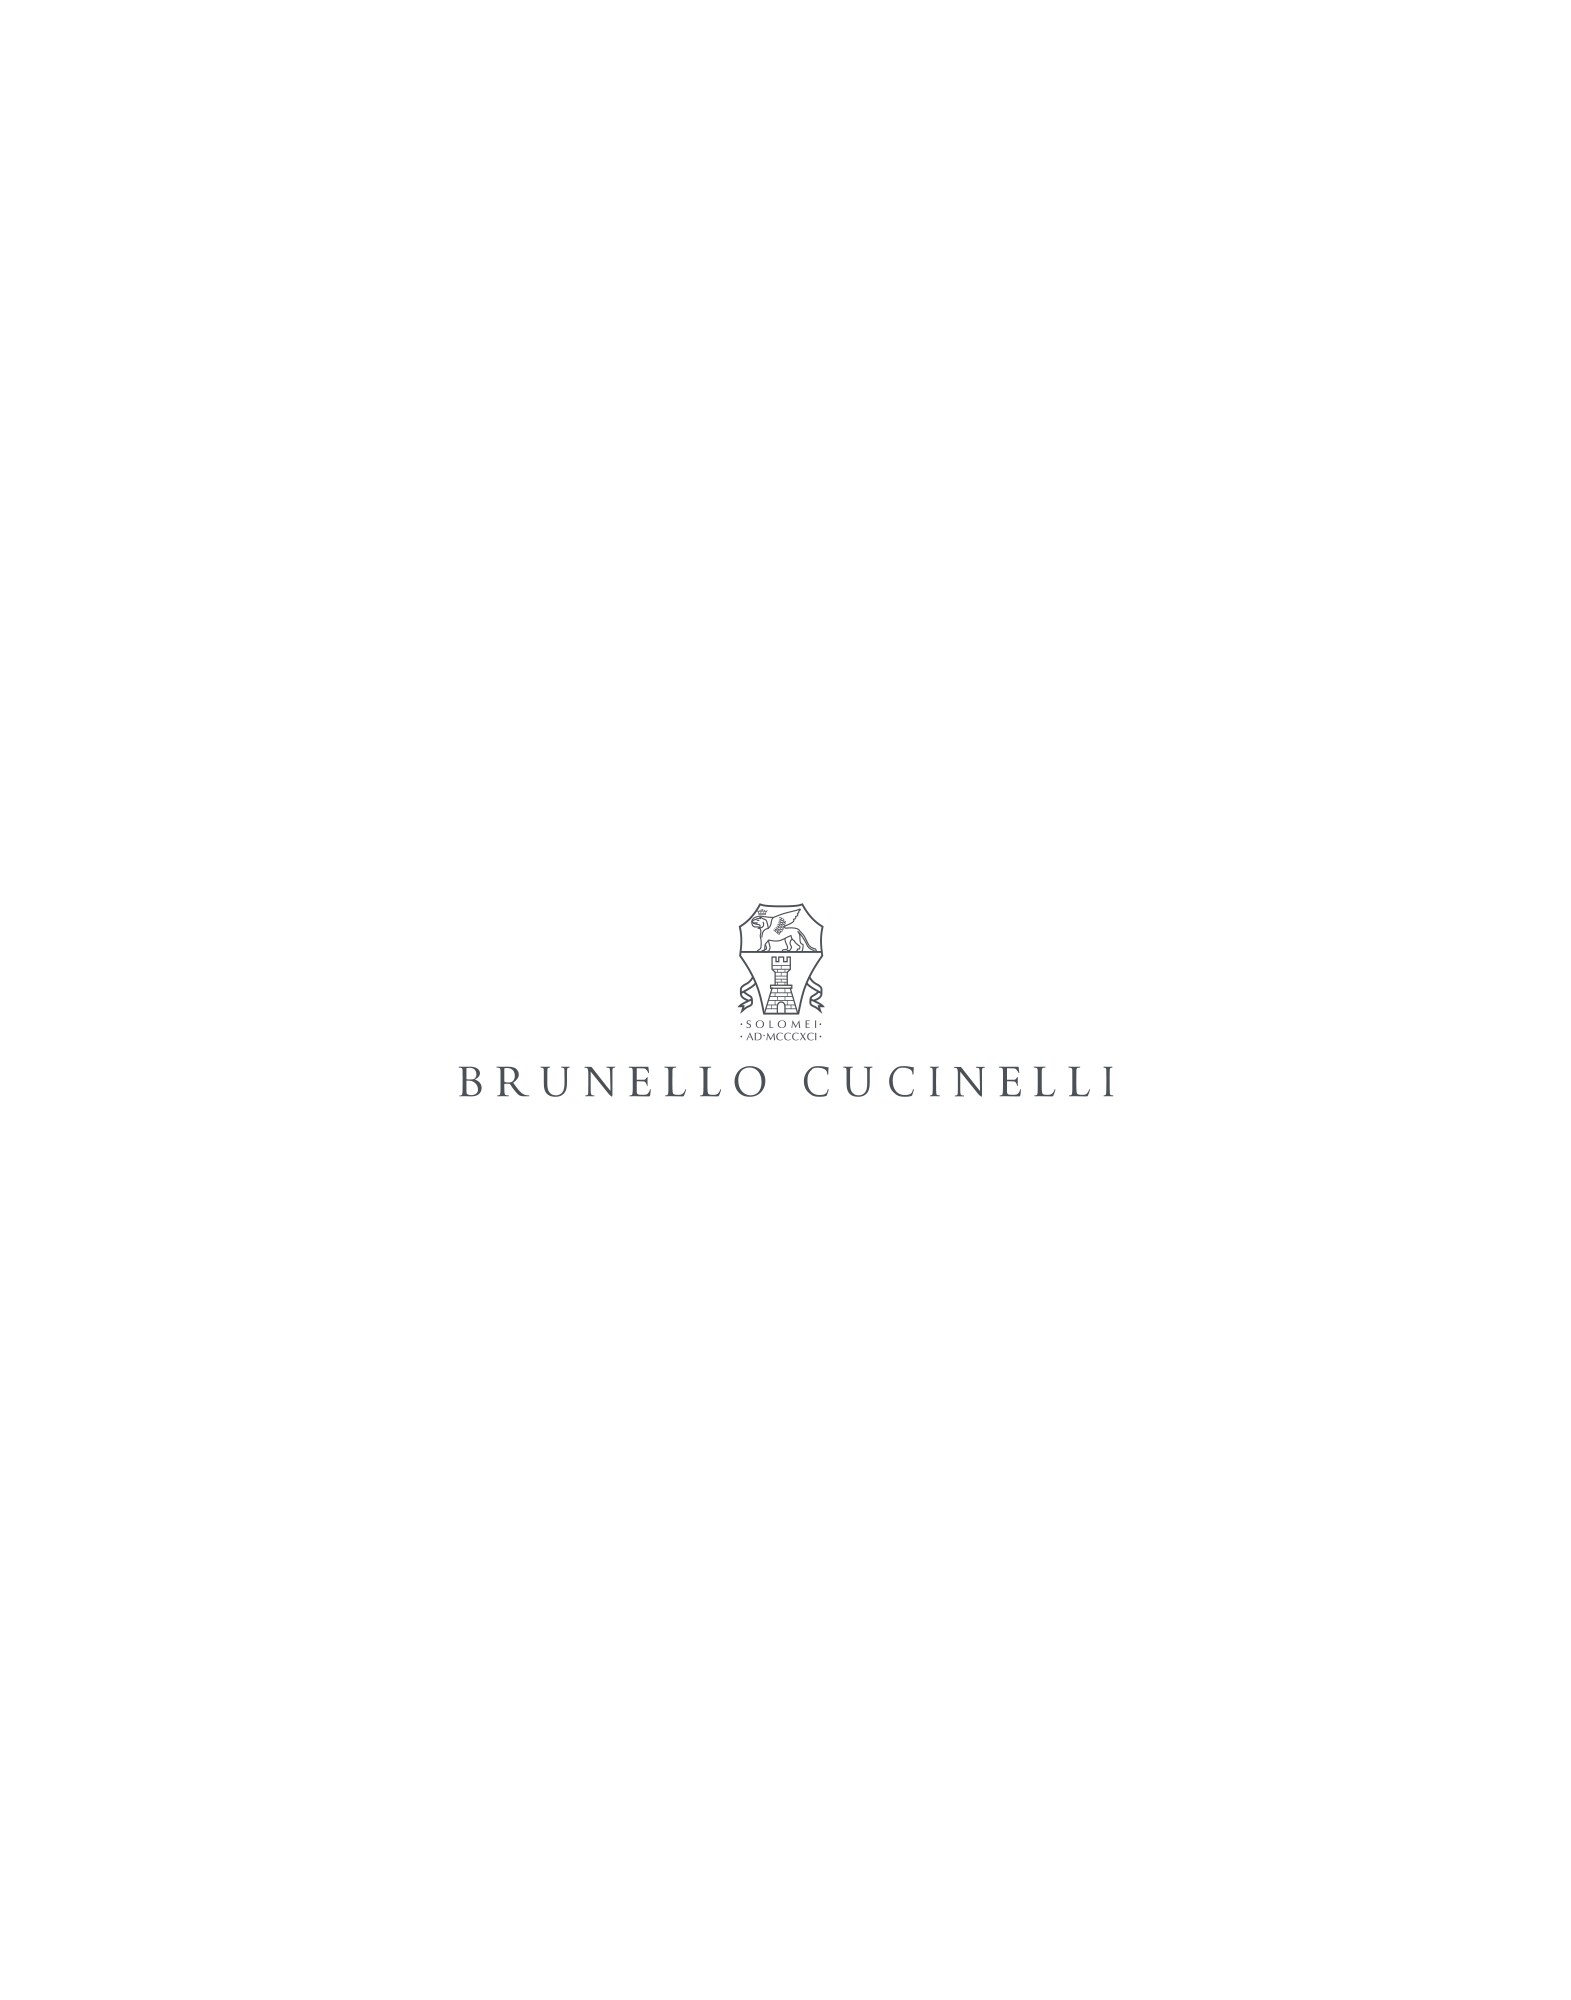 Discover Look 241MOUTFITMHN217BTZCAJ77 - Brunello Cucinelli